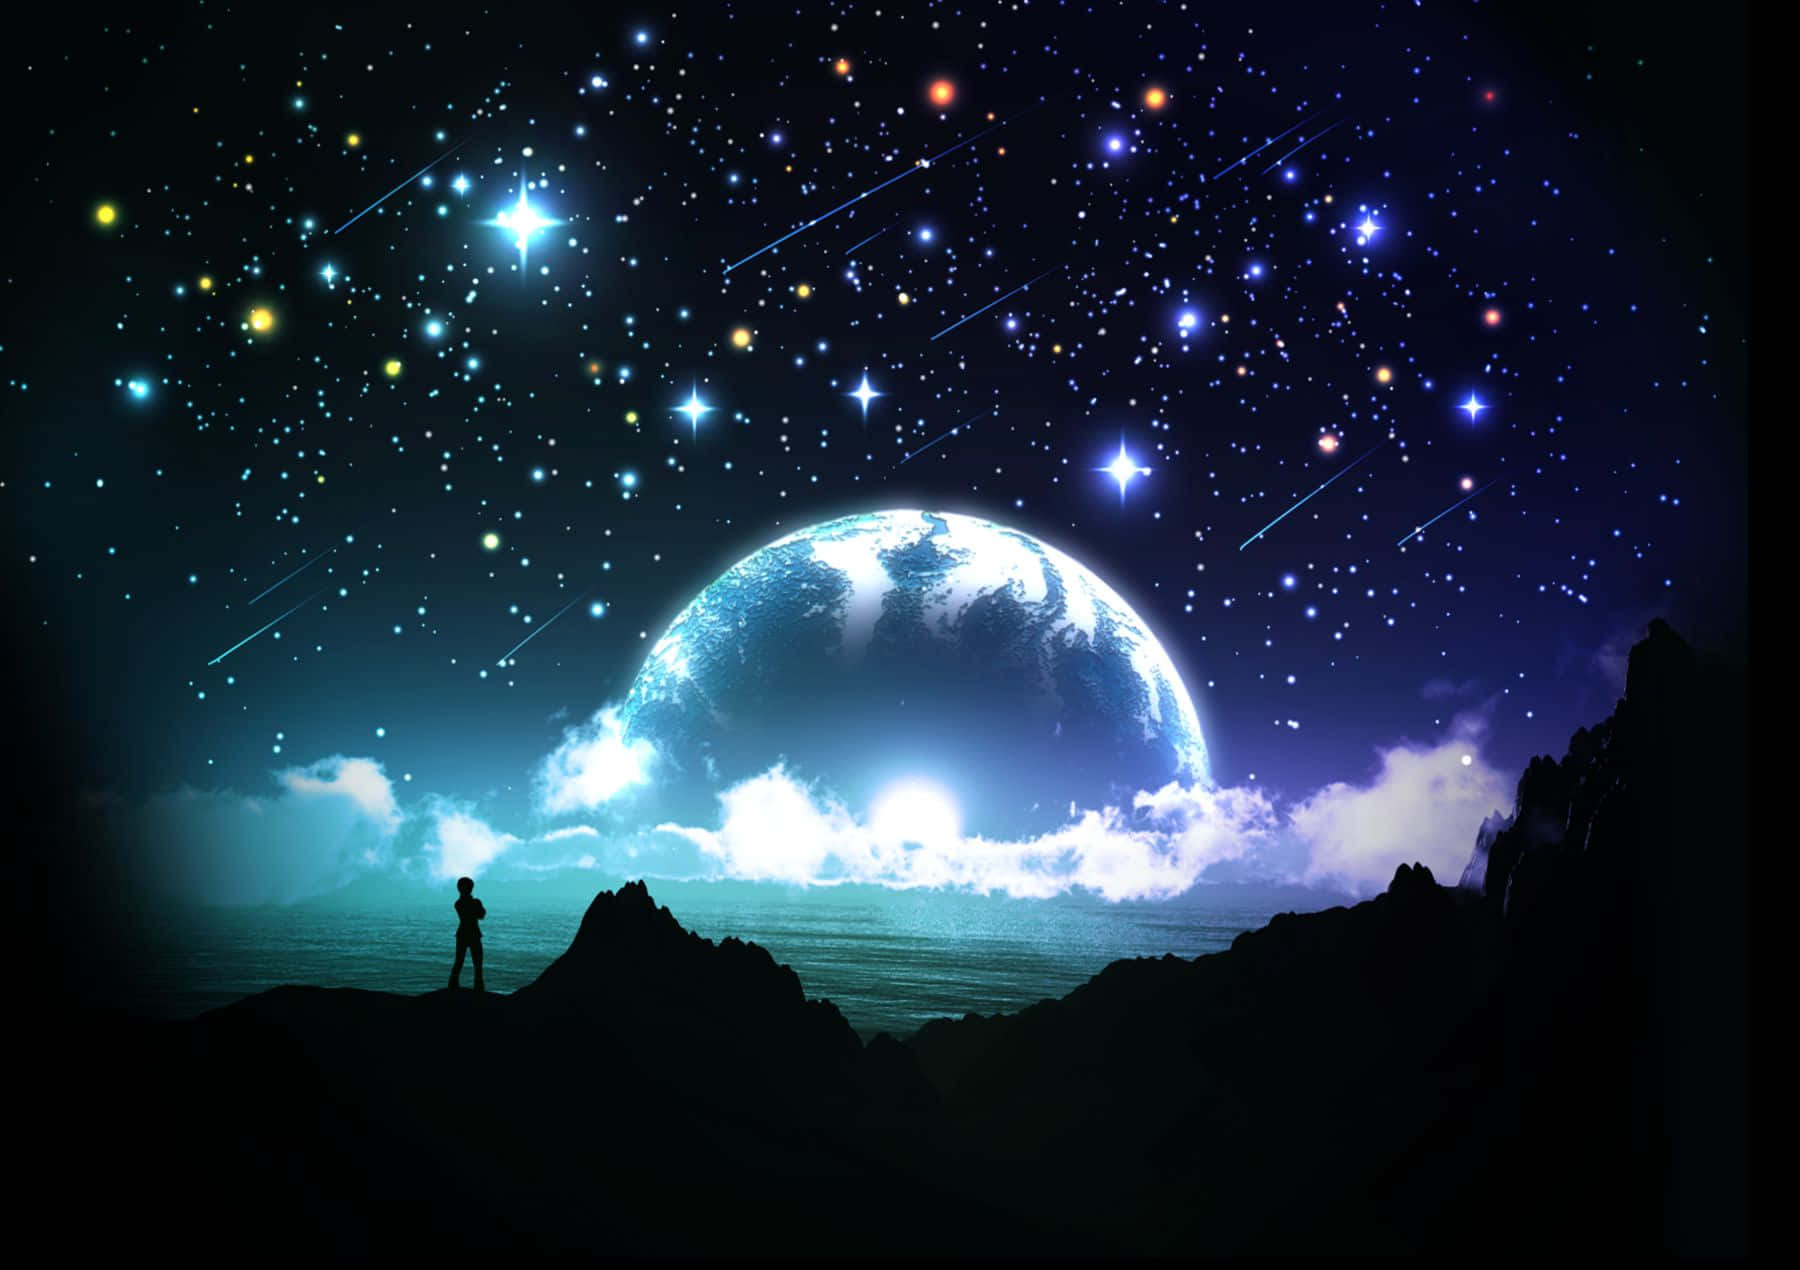 Lunay Estrellas: Un Cielo Nocturno Mágico